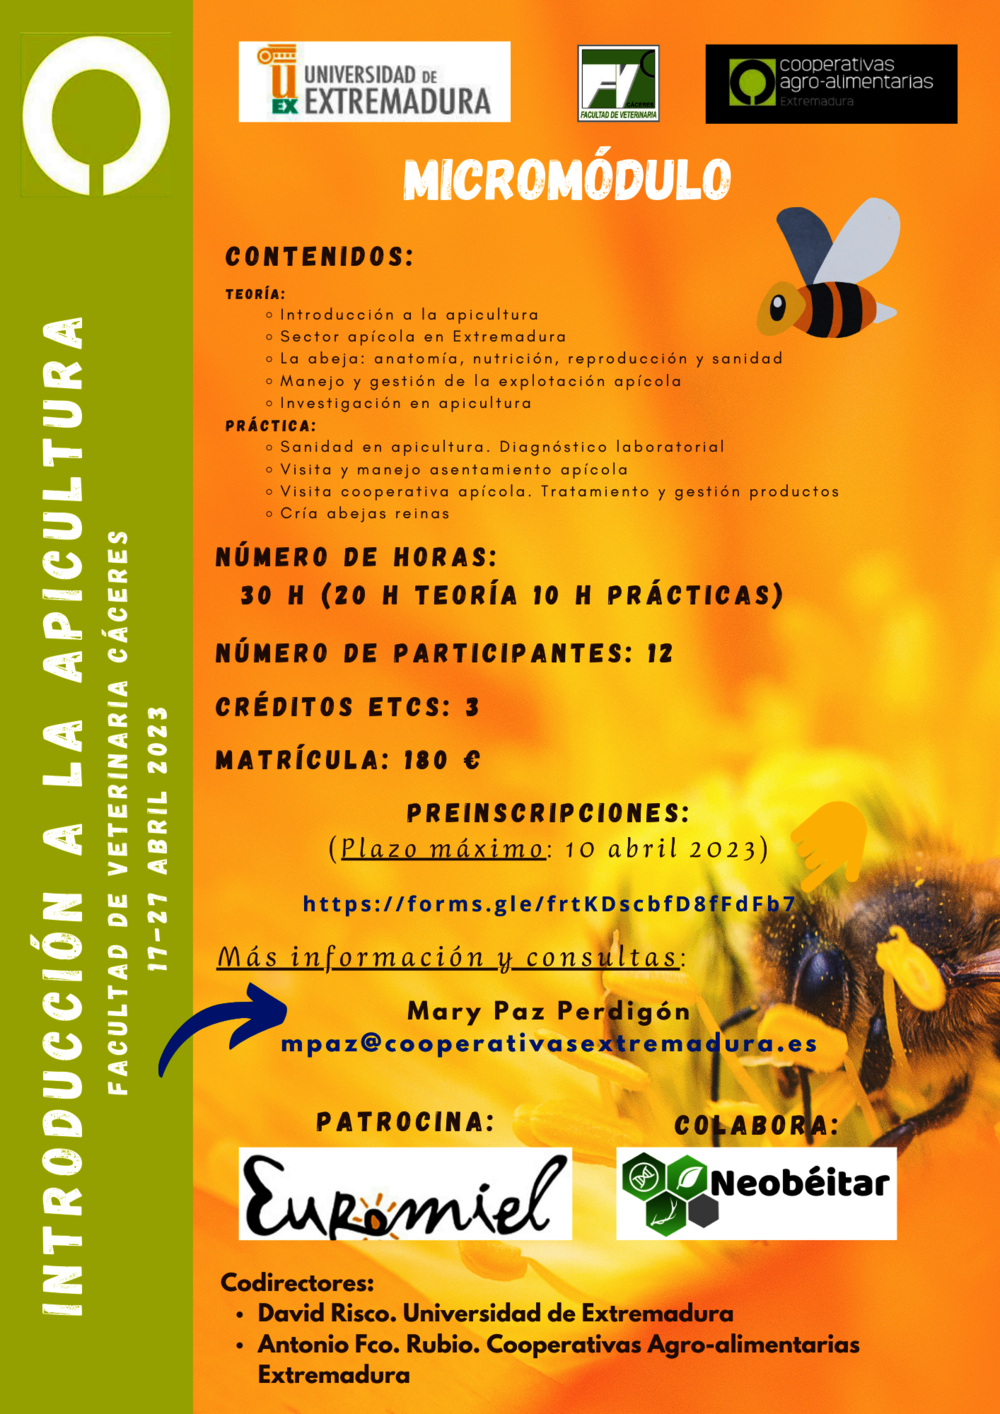 Cooperativas Extremadura impartirá formación para contar con profesionales especializados en apicultura